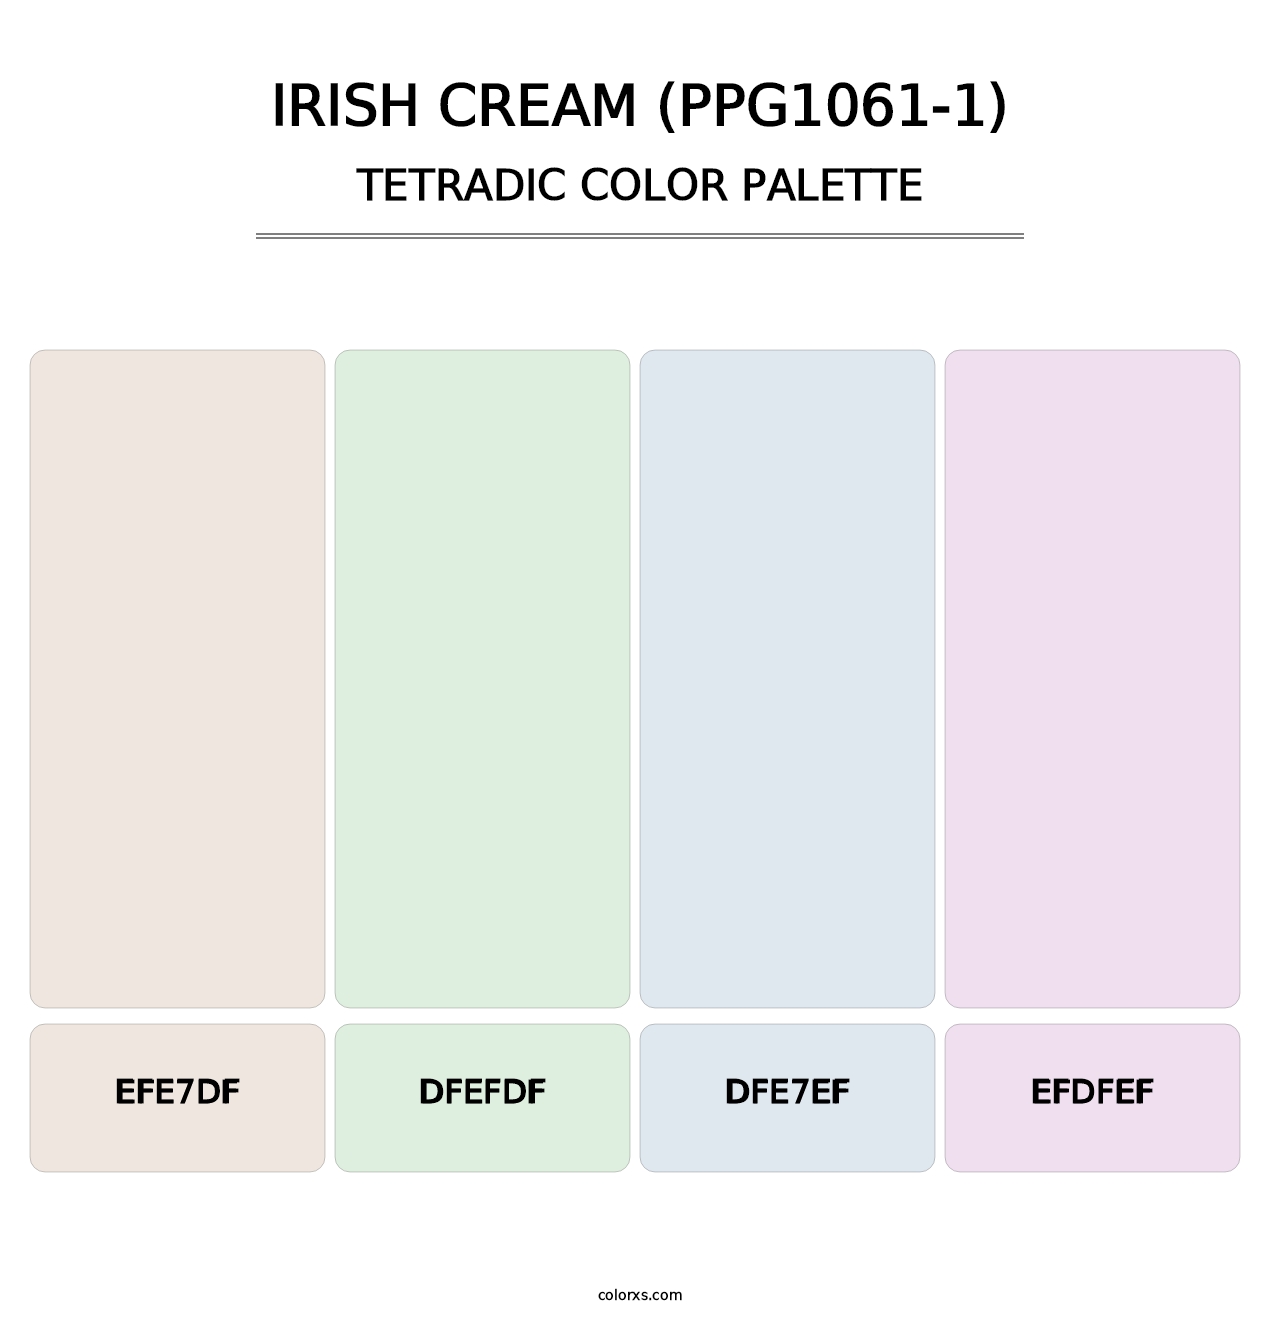 Irish Cream (PPG1061-1) - Tetradic Color Palette